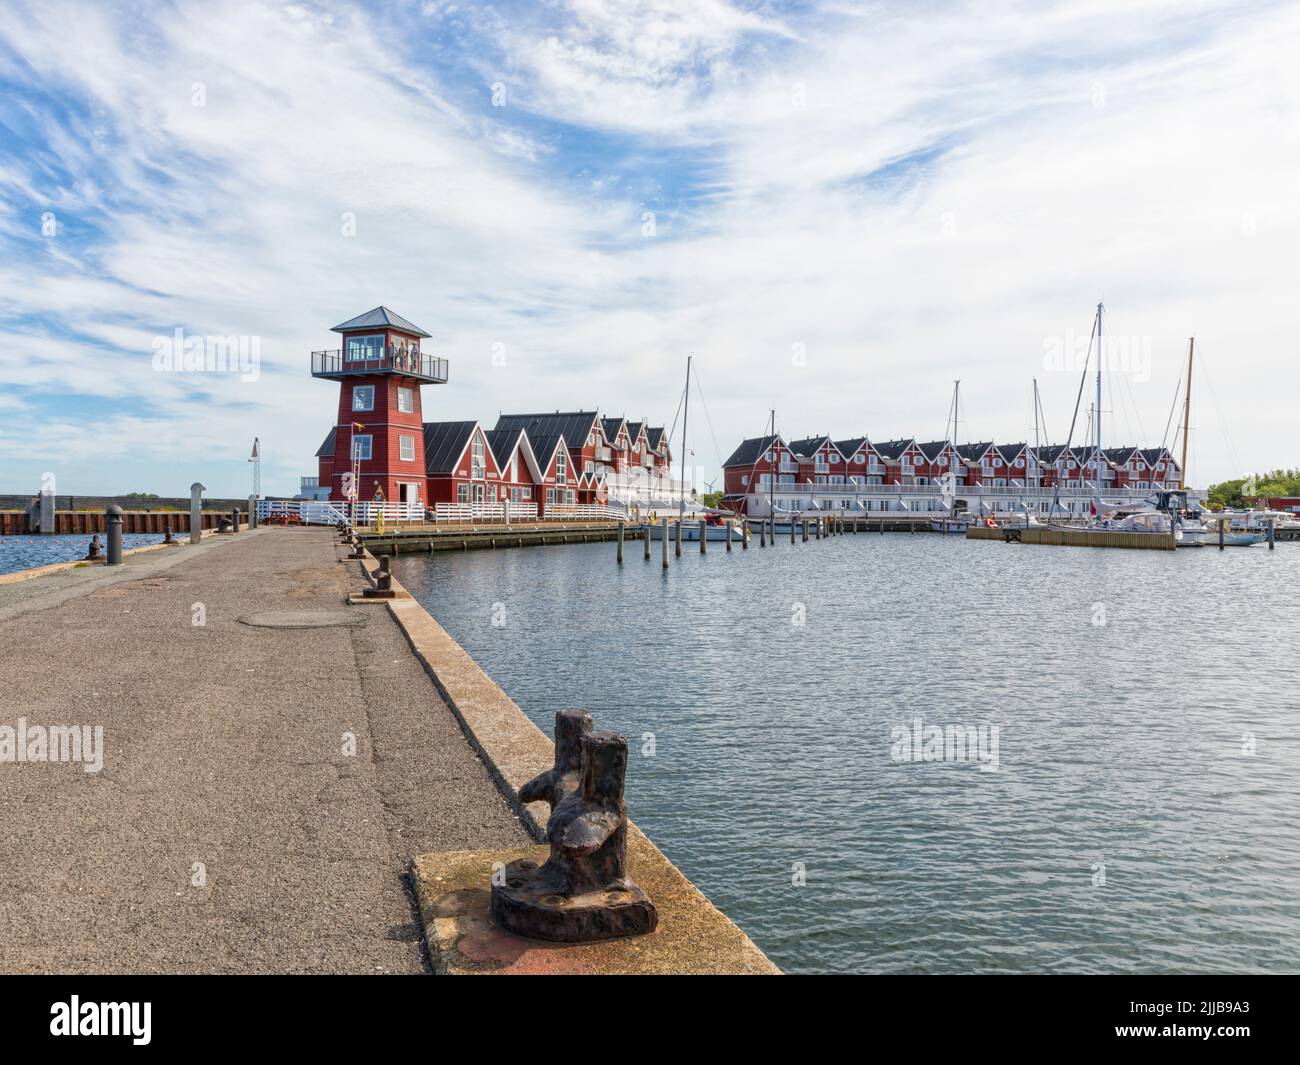 Edificios comerciales, casas de verano y torre de observación en el puerto de Bagenkop, Langeland, Dinamarca. Foto de stock